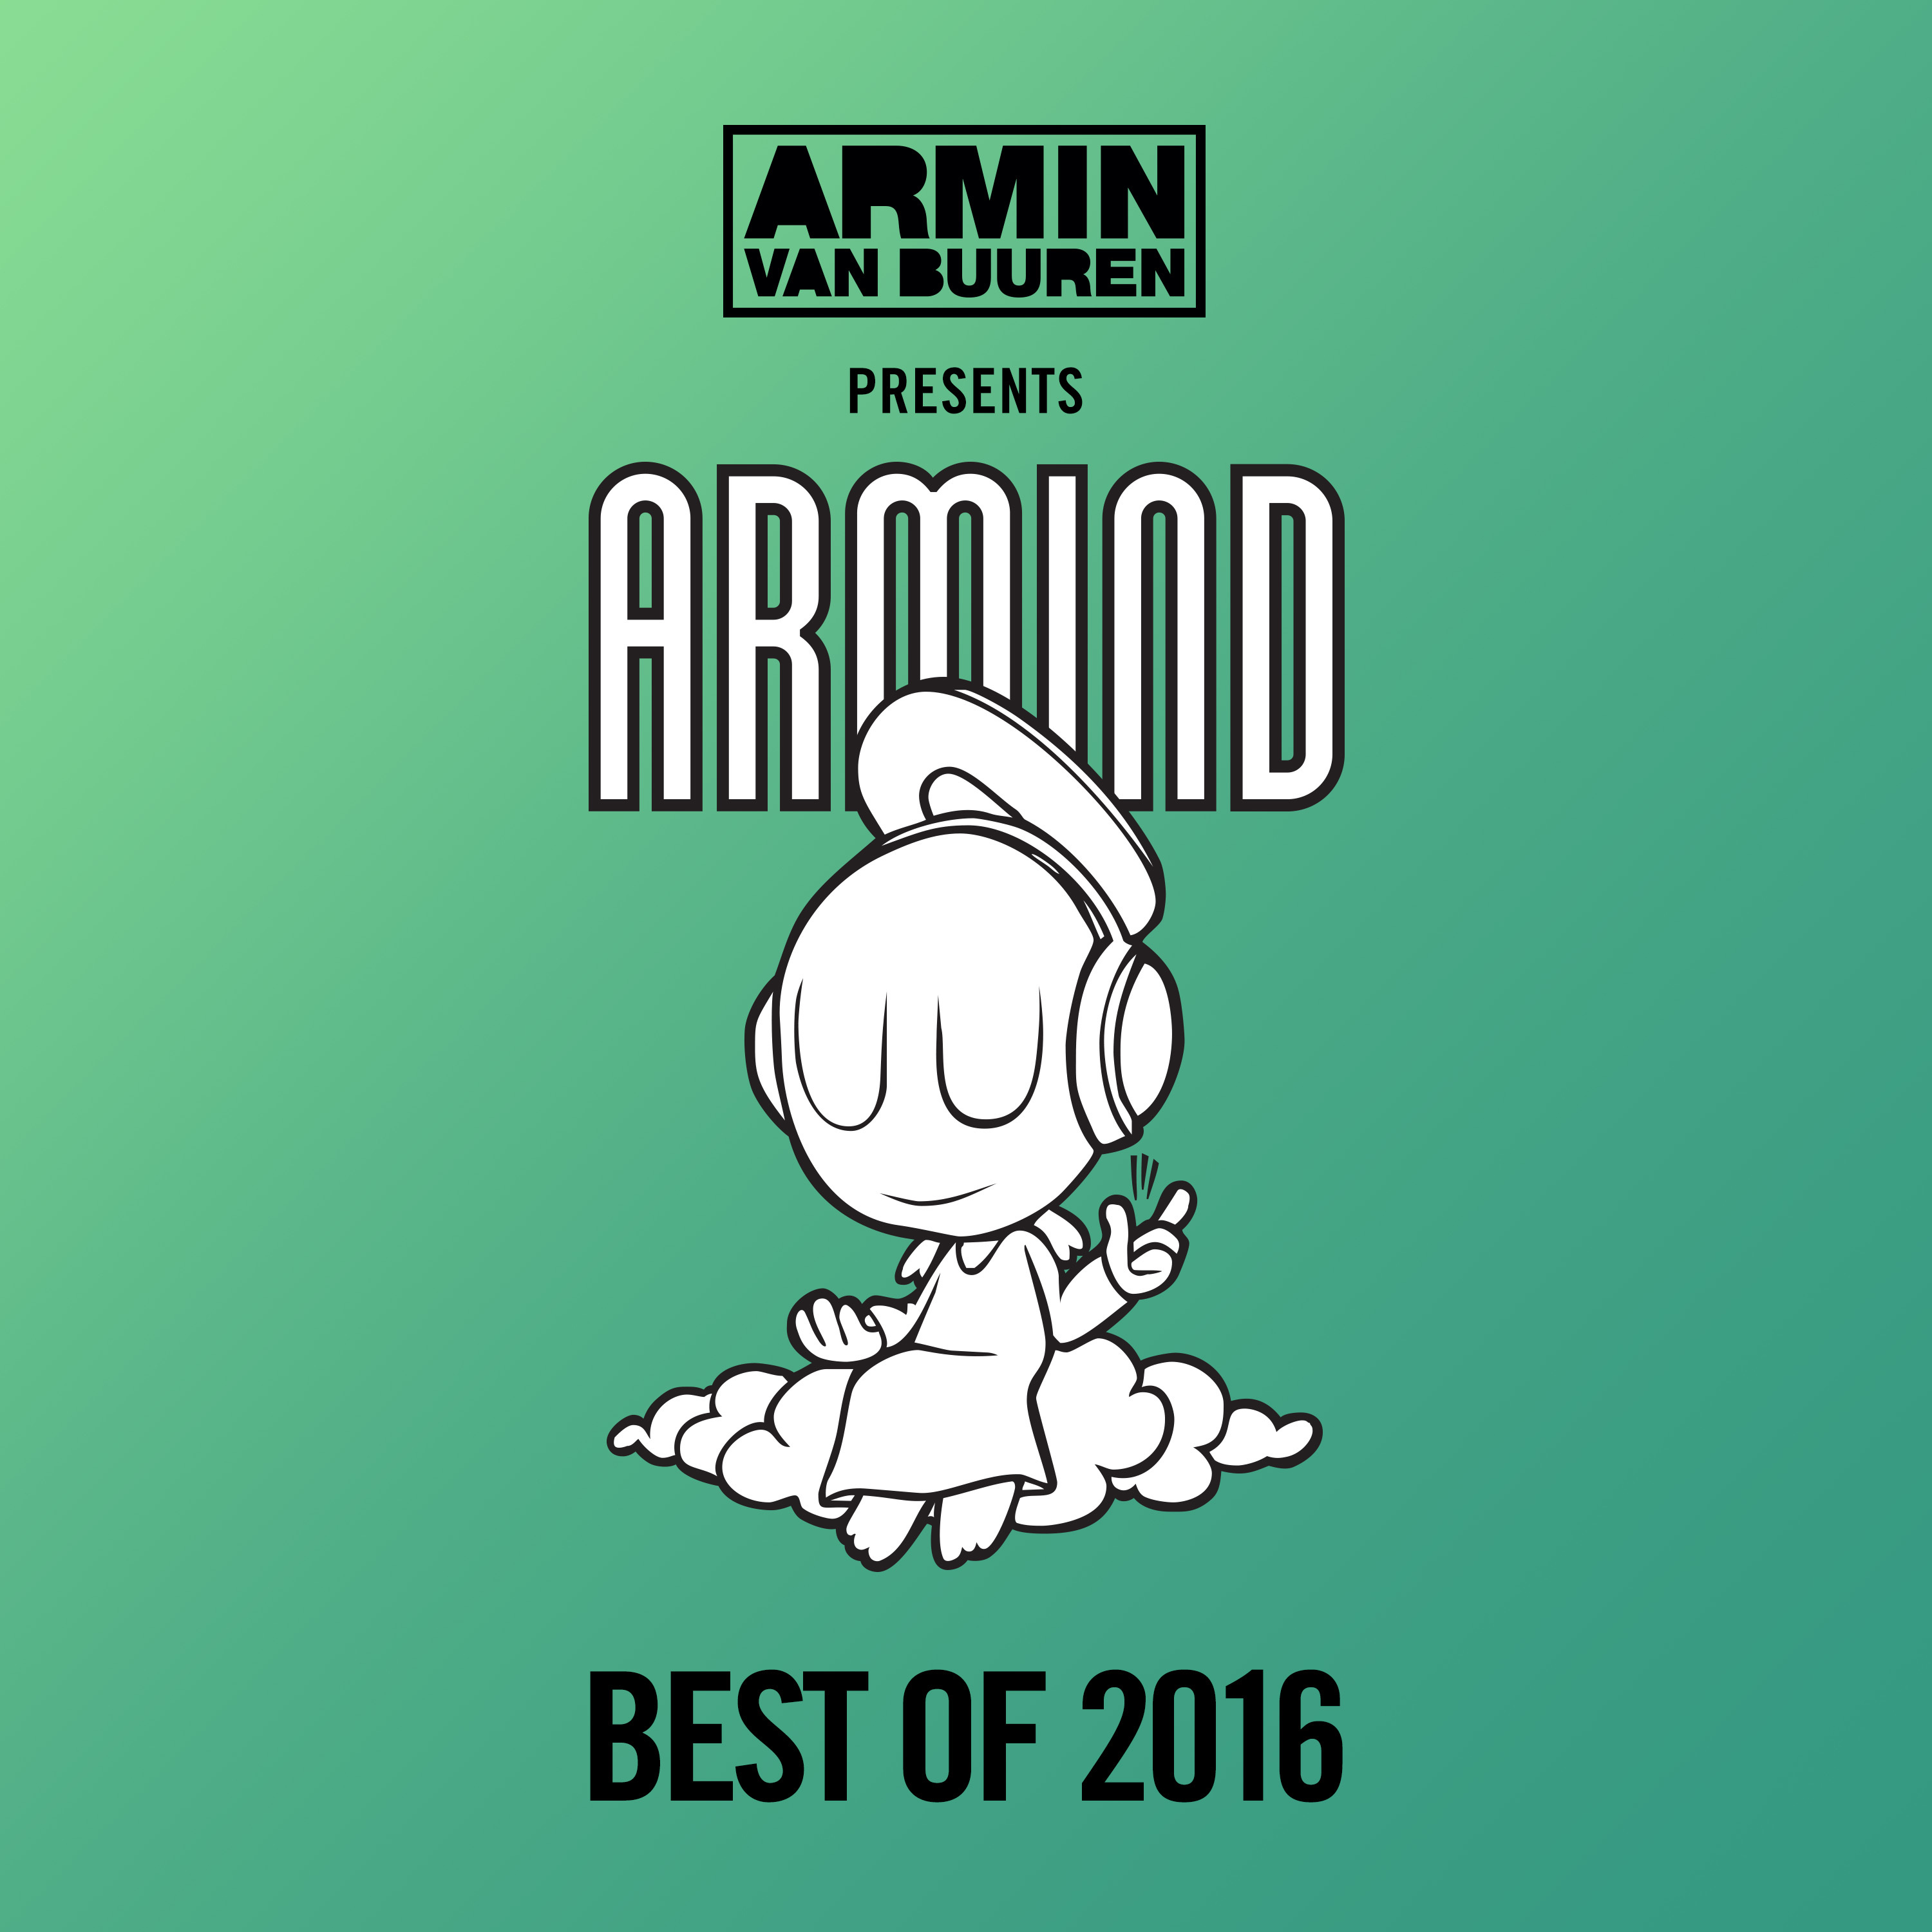 Armin van Buuren presents Armind - Best Of 2016